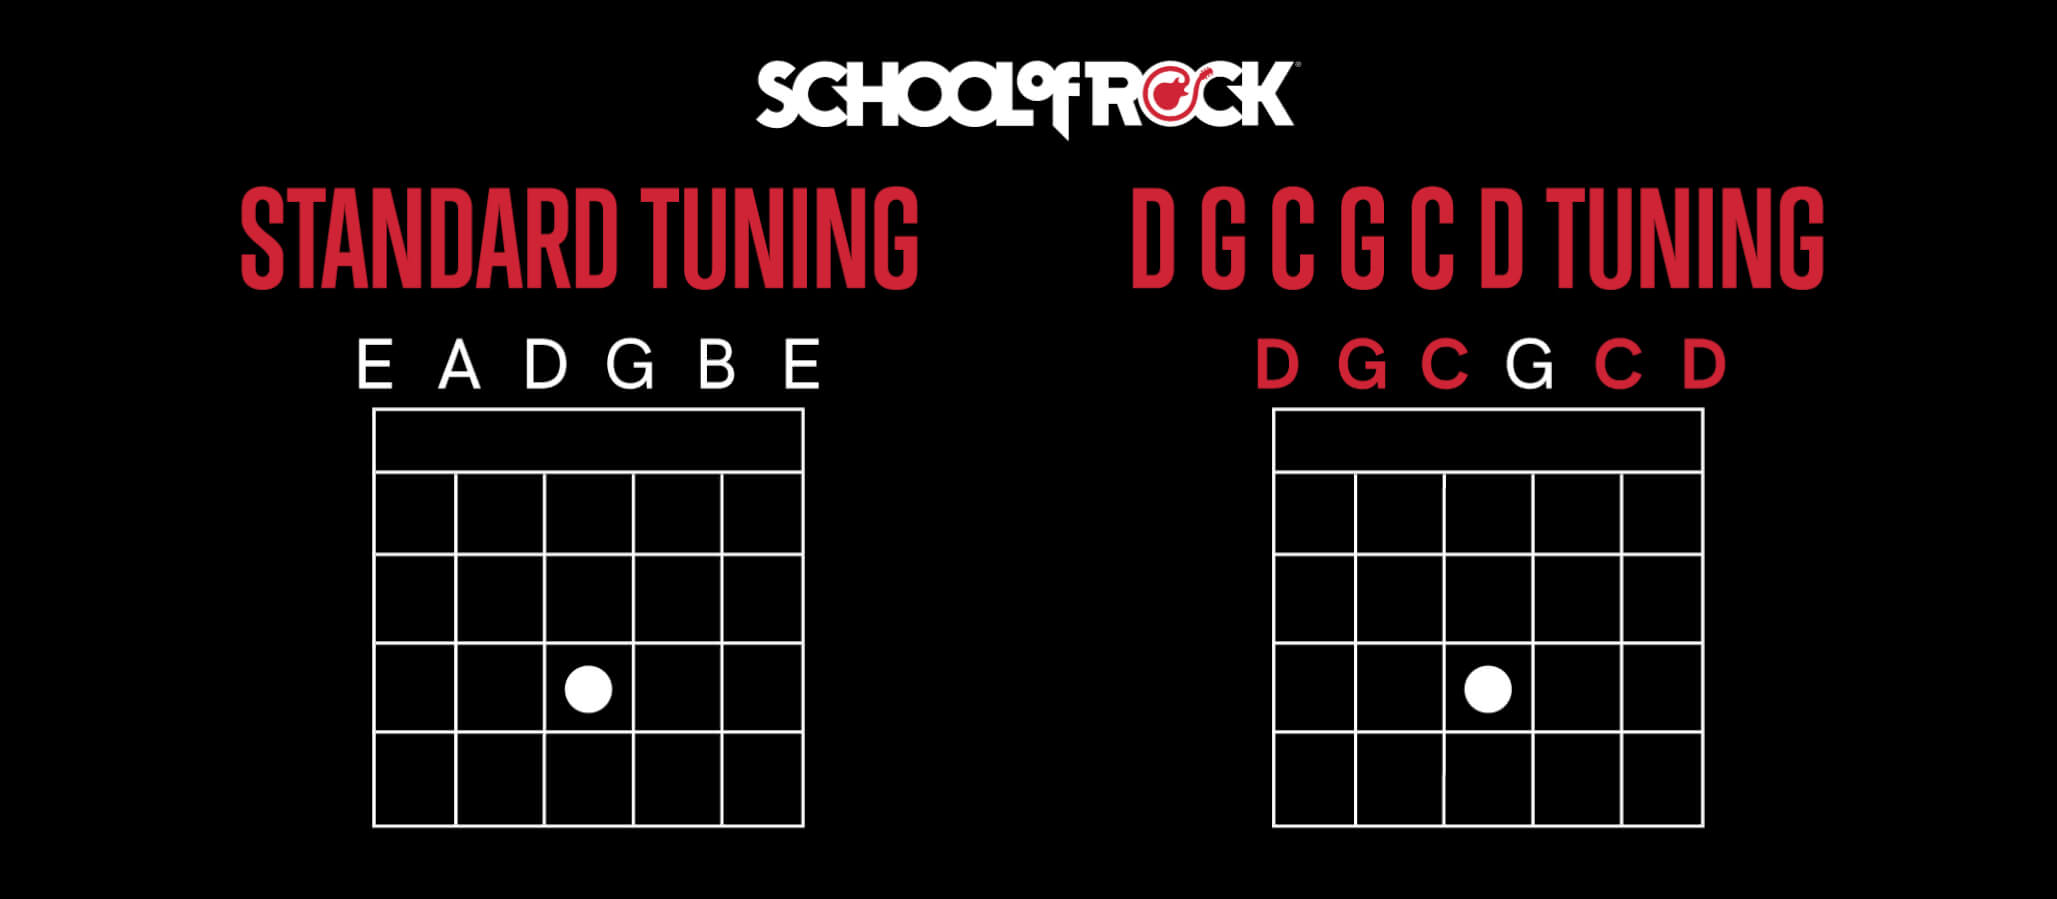 Tuning: DGCGCD